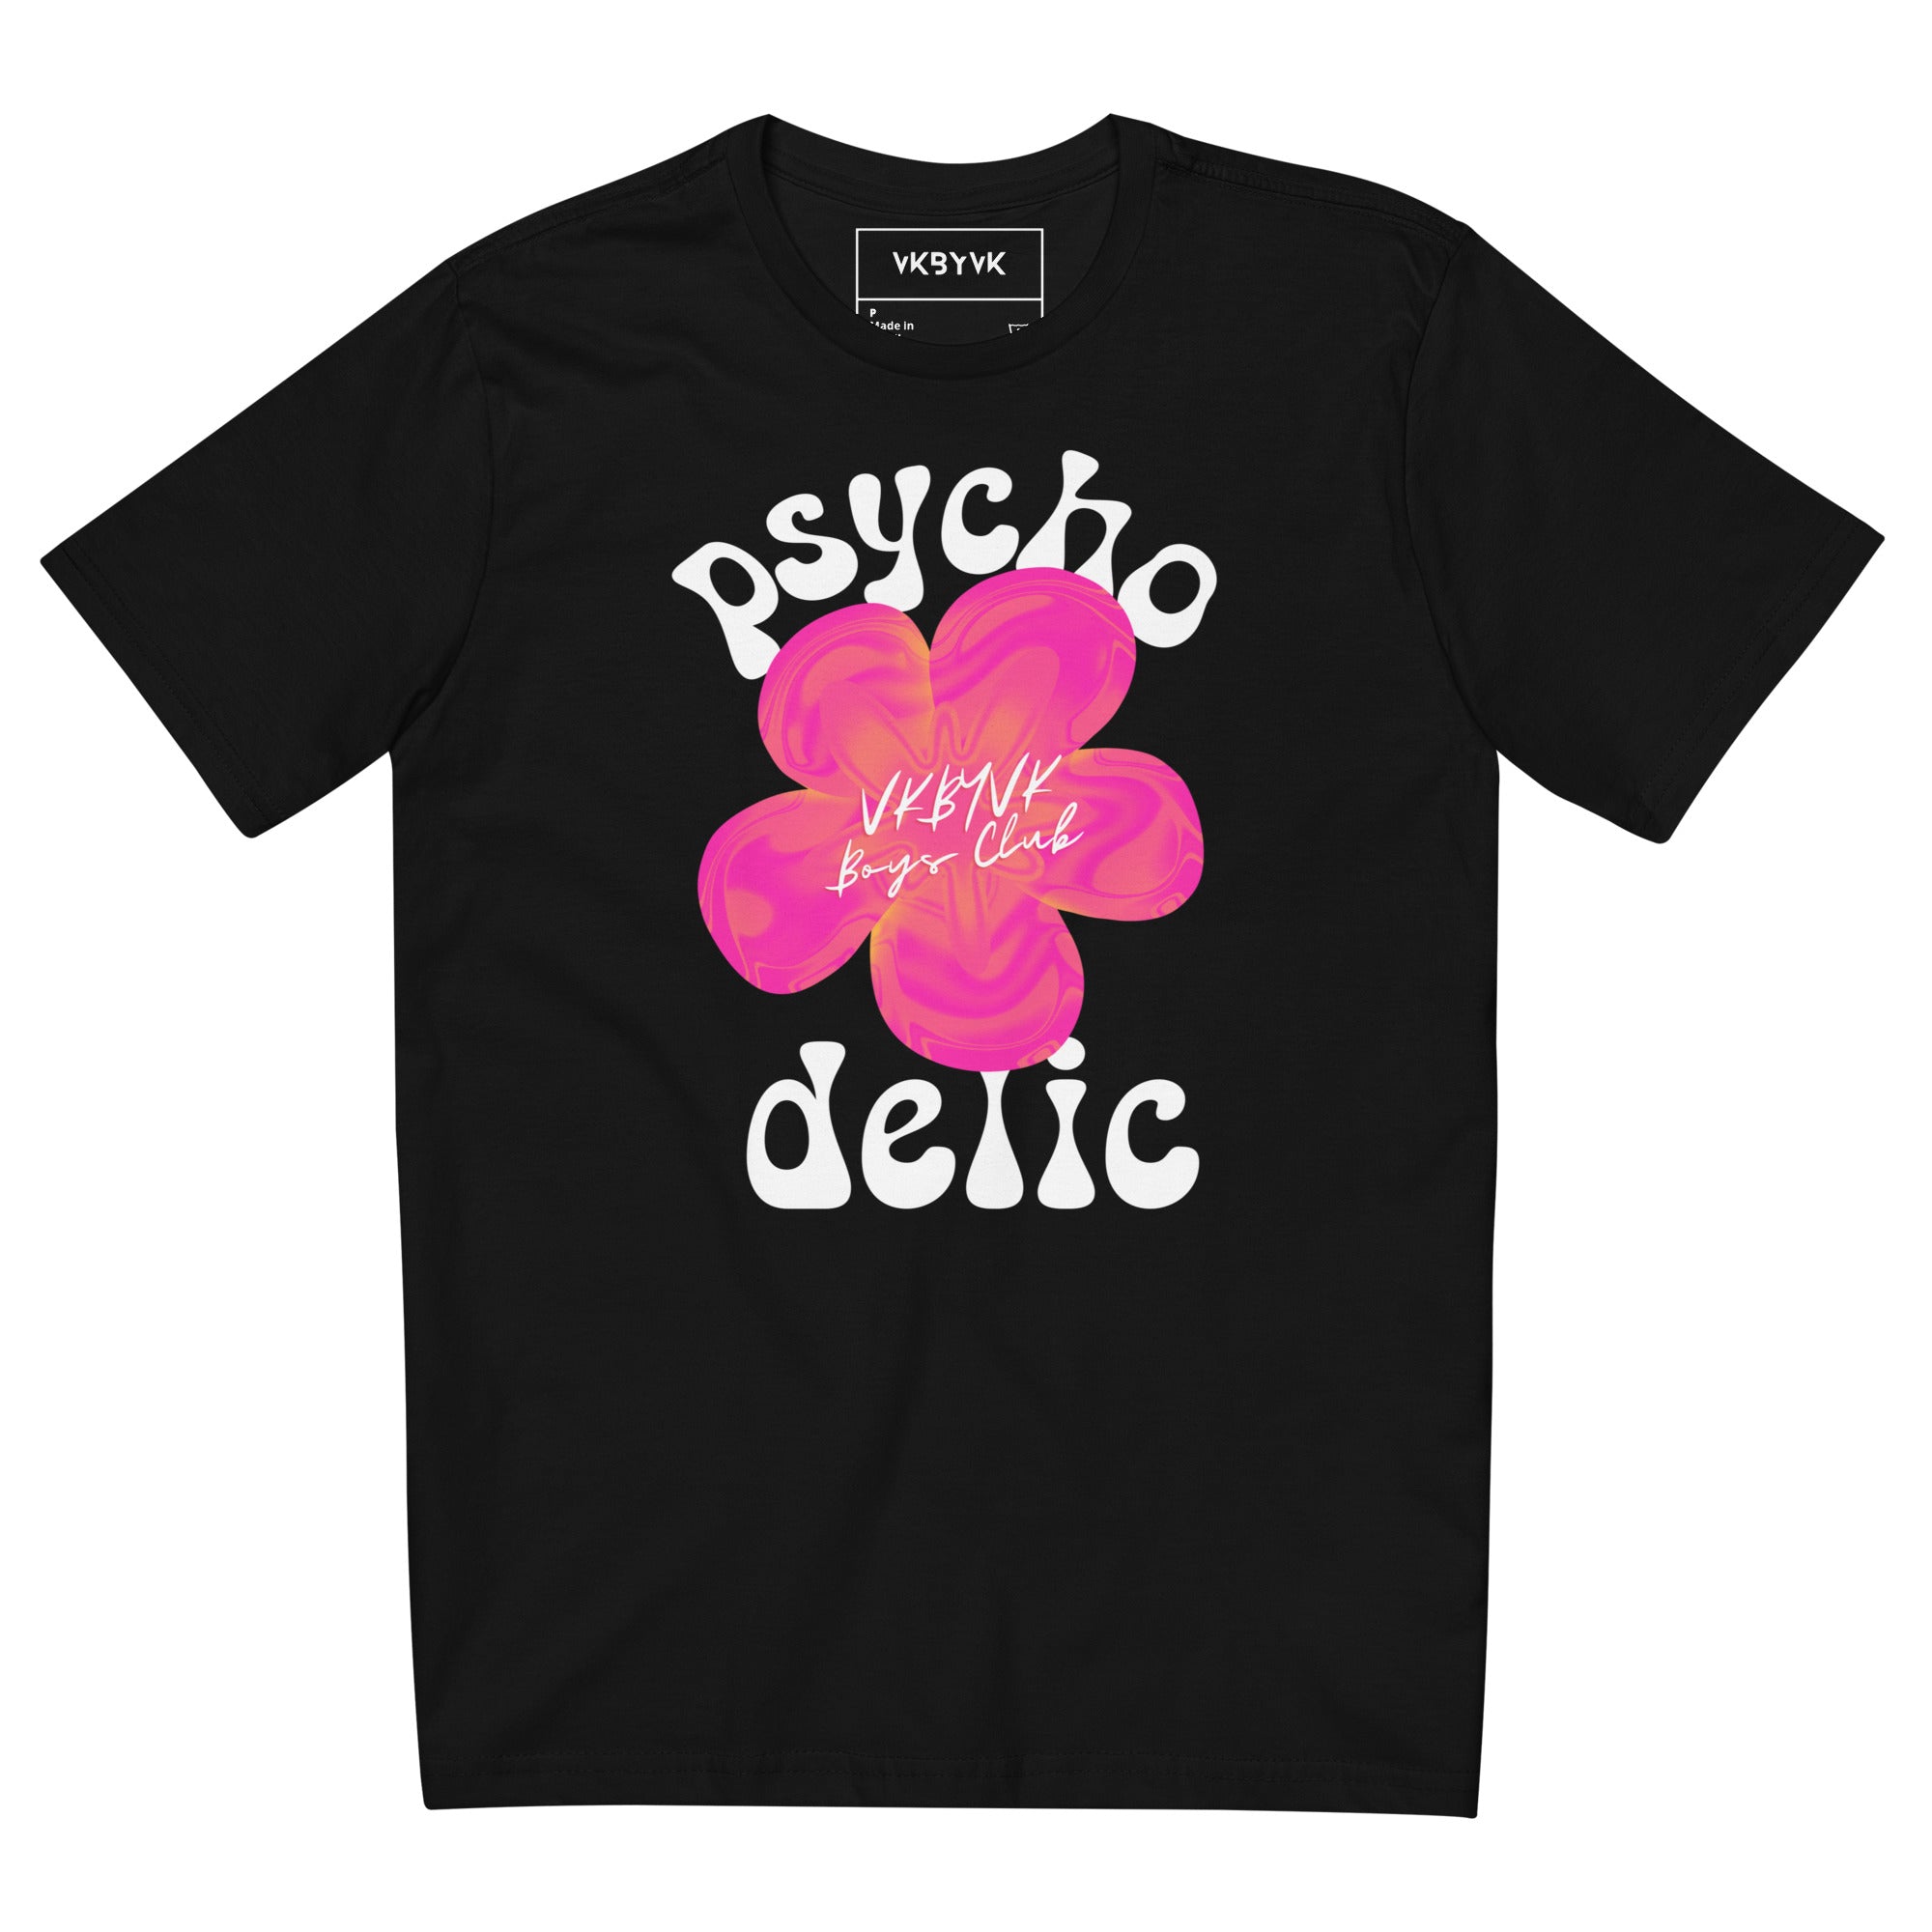 Camiseta Psychodelic VK by VK